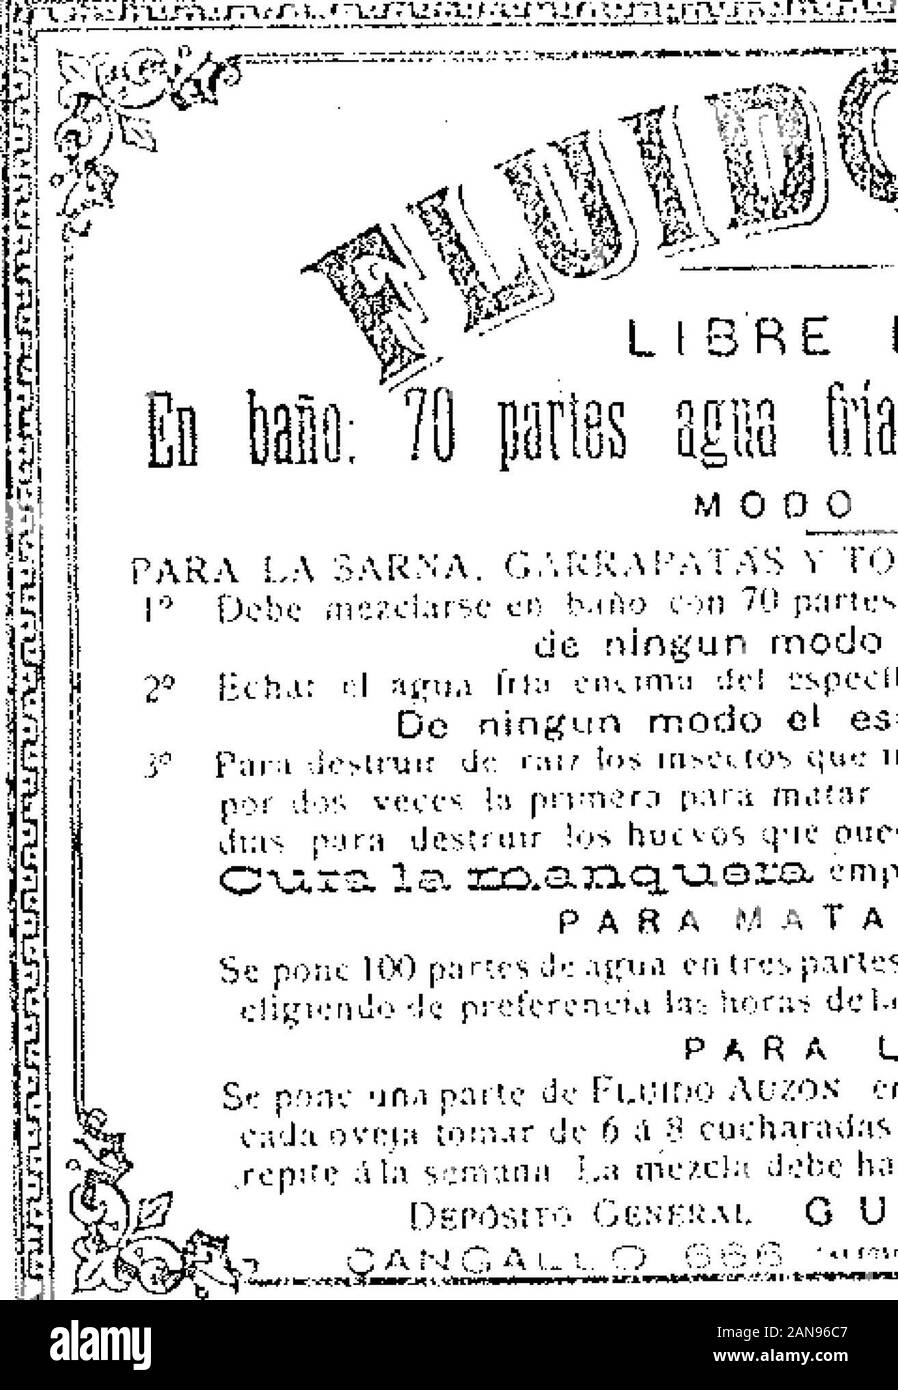 Boletín Oficial de la República Argentina1903 1ra sección . *? ** LIBRE DE VENENO ^mi agua fría - un maao: 50 parías. Foto Stock